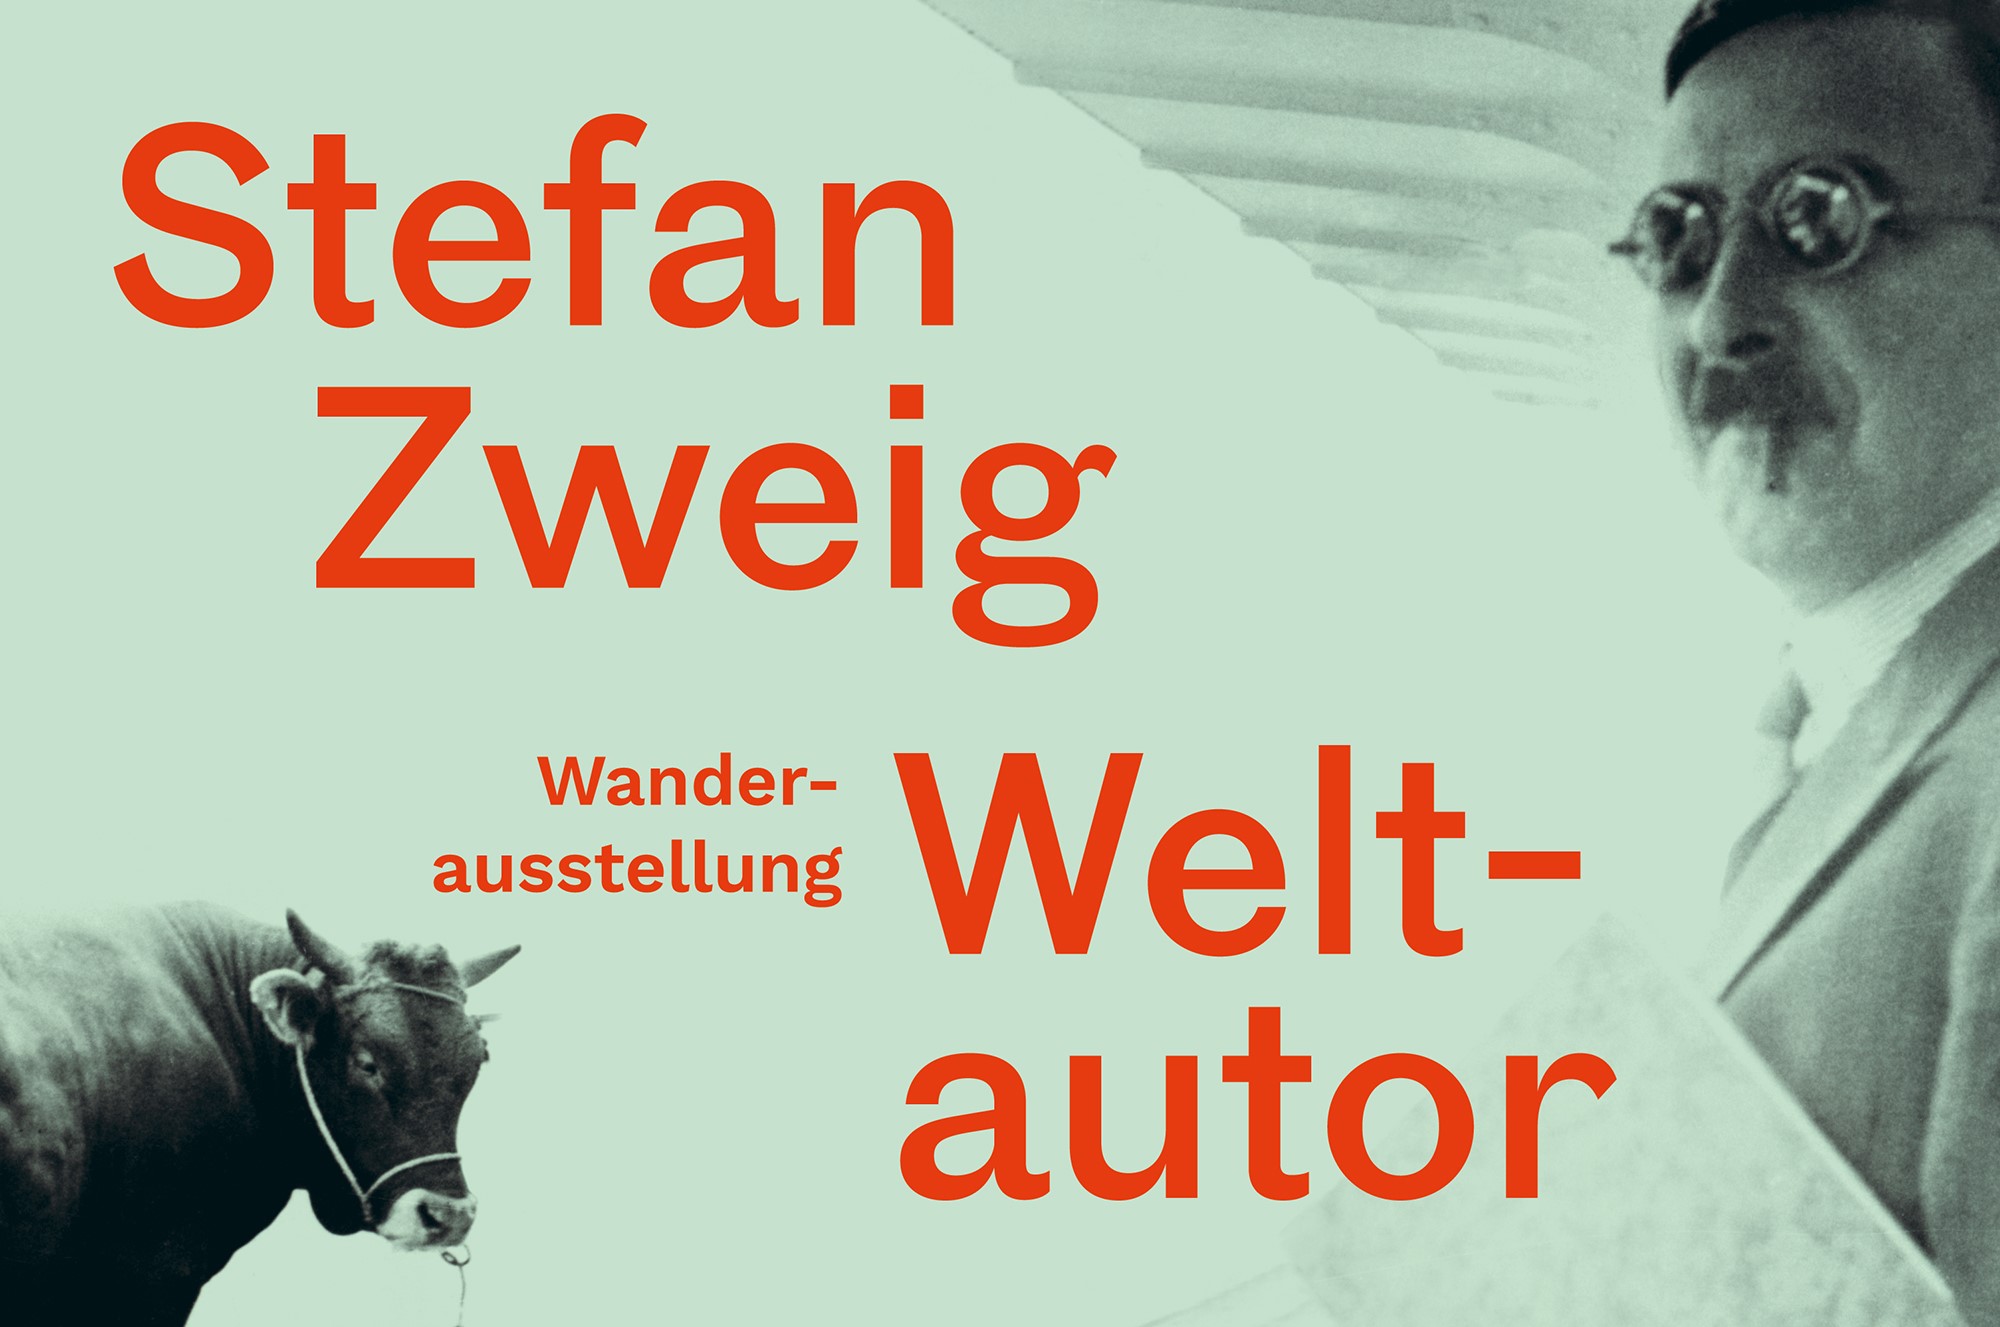 Grünliches Foto von Mann mit Stier, darauf Text in Rot: Stefan Zwei Weltautor. Wanderausstellung"